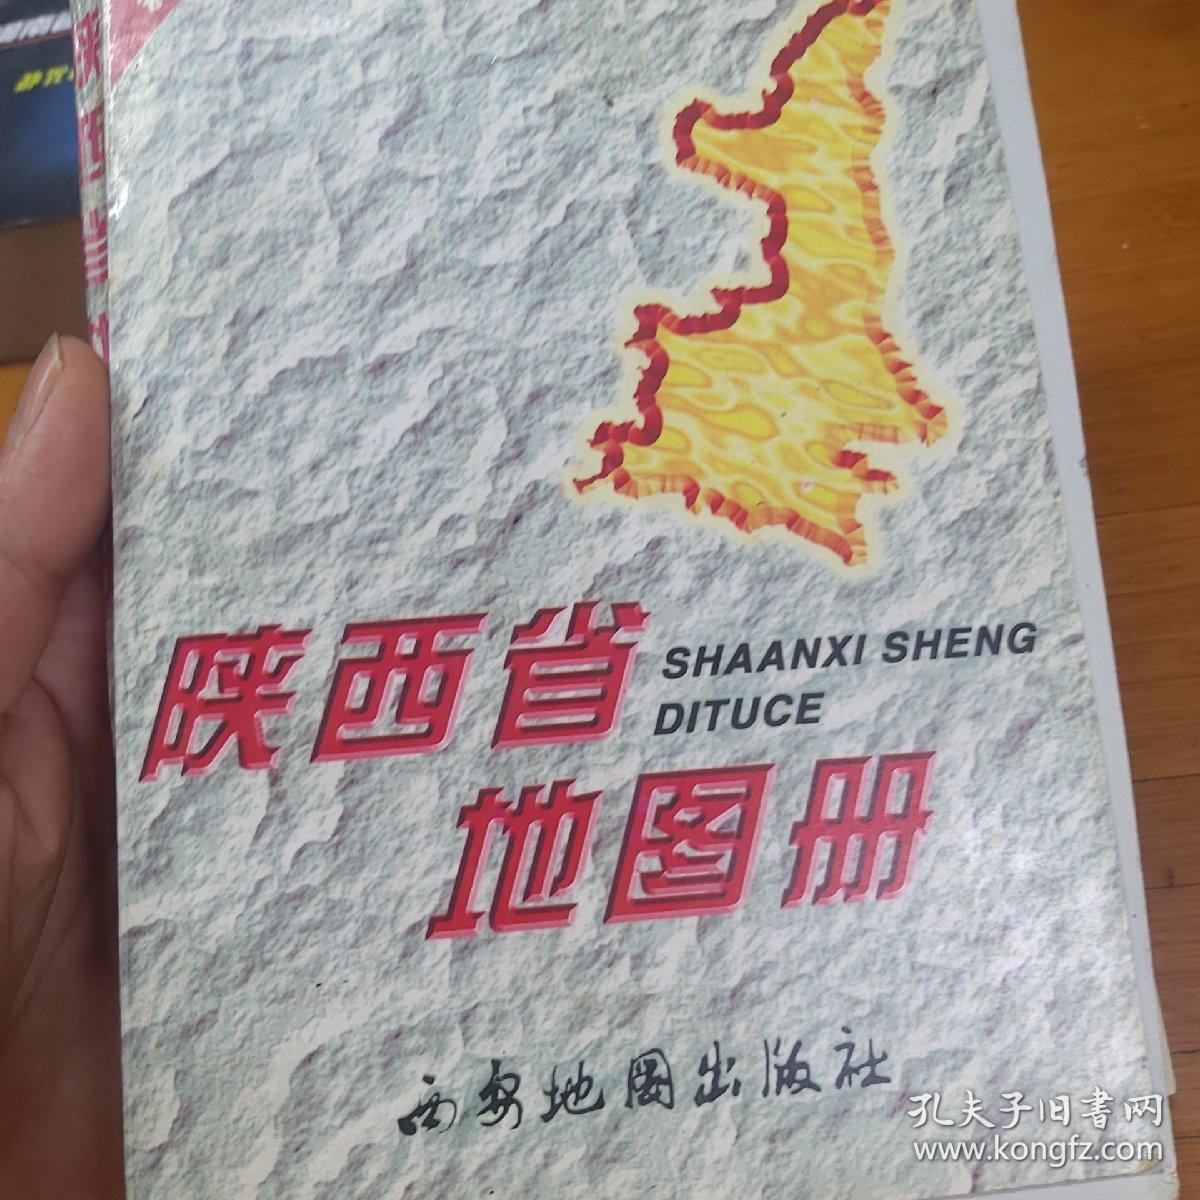 陕西省地图册